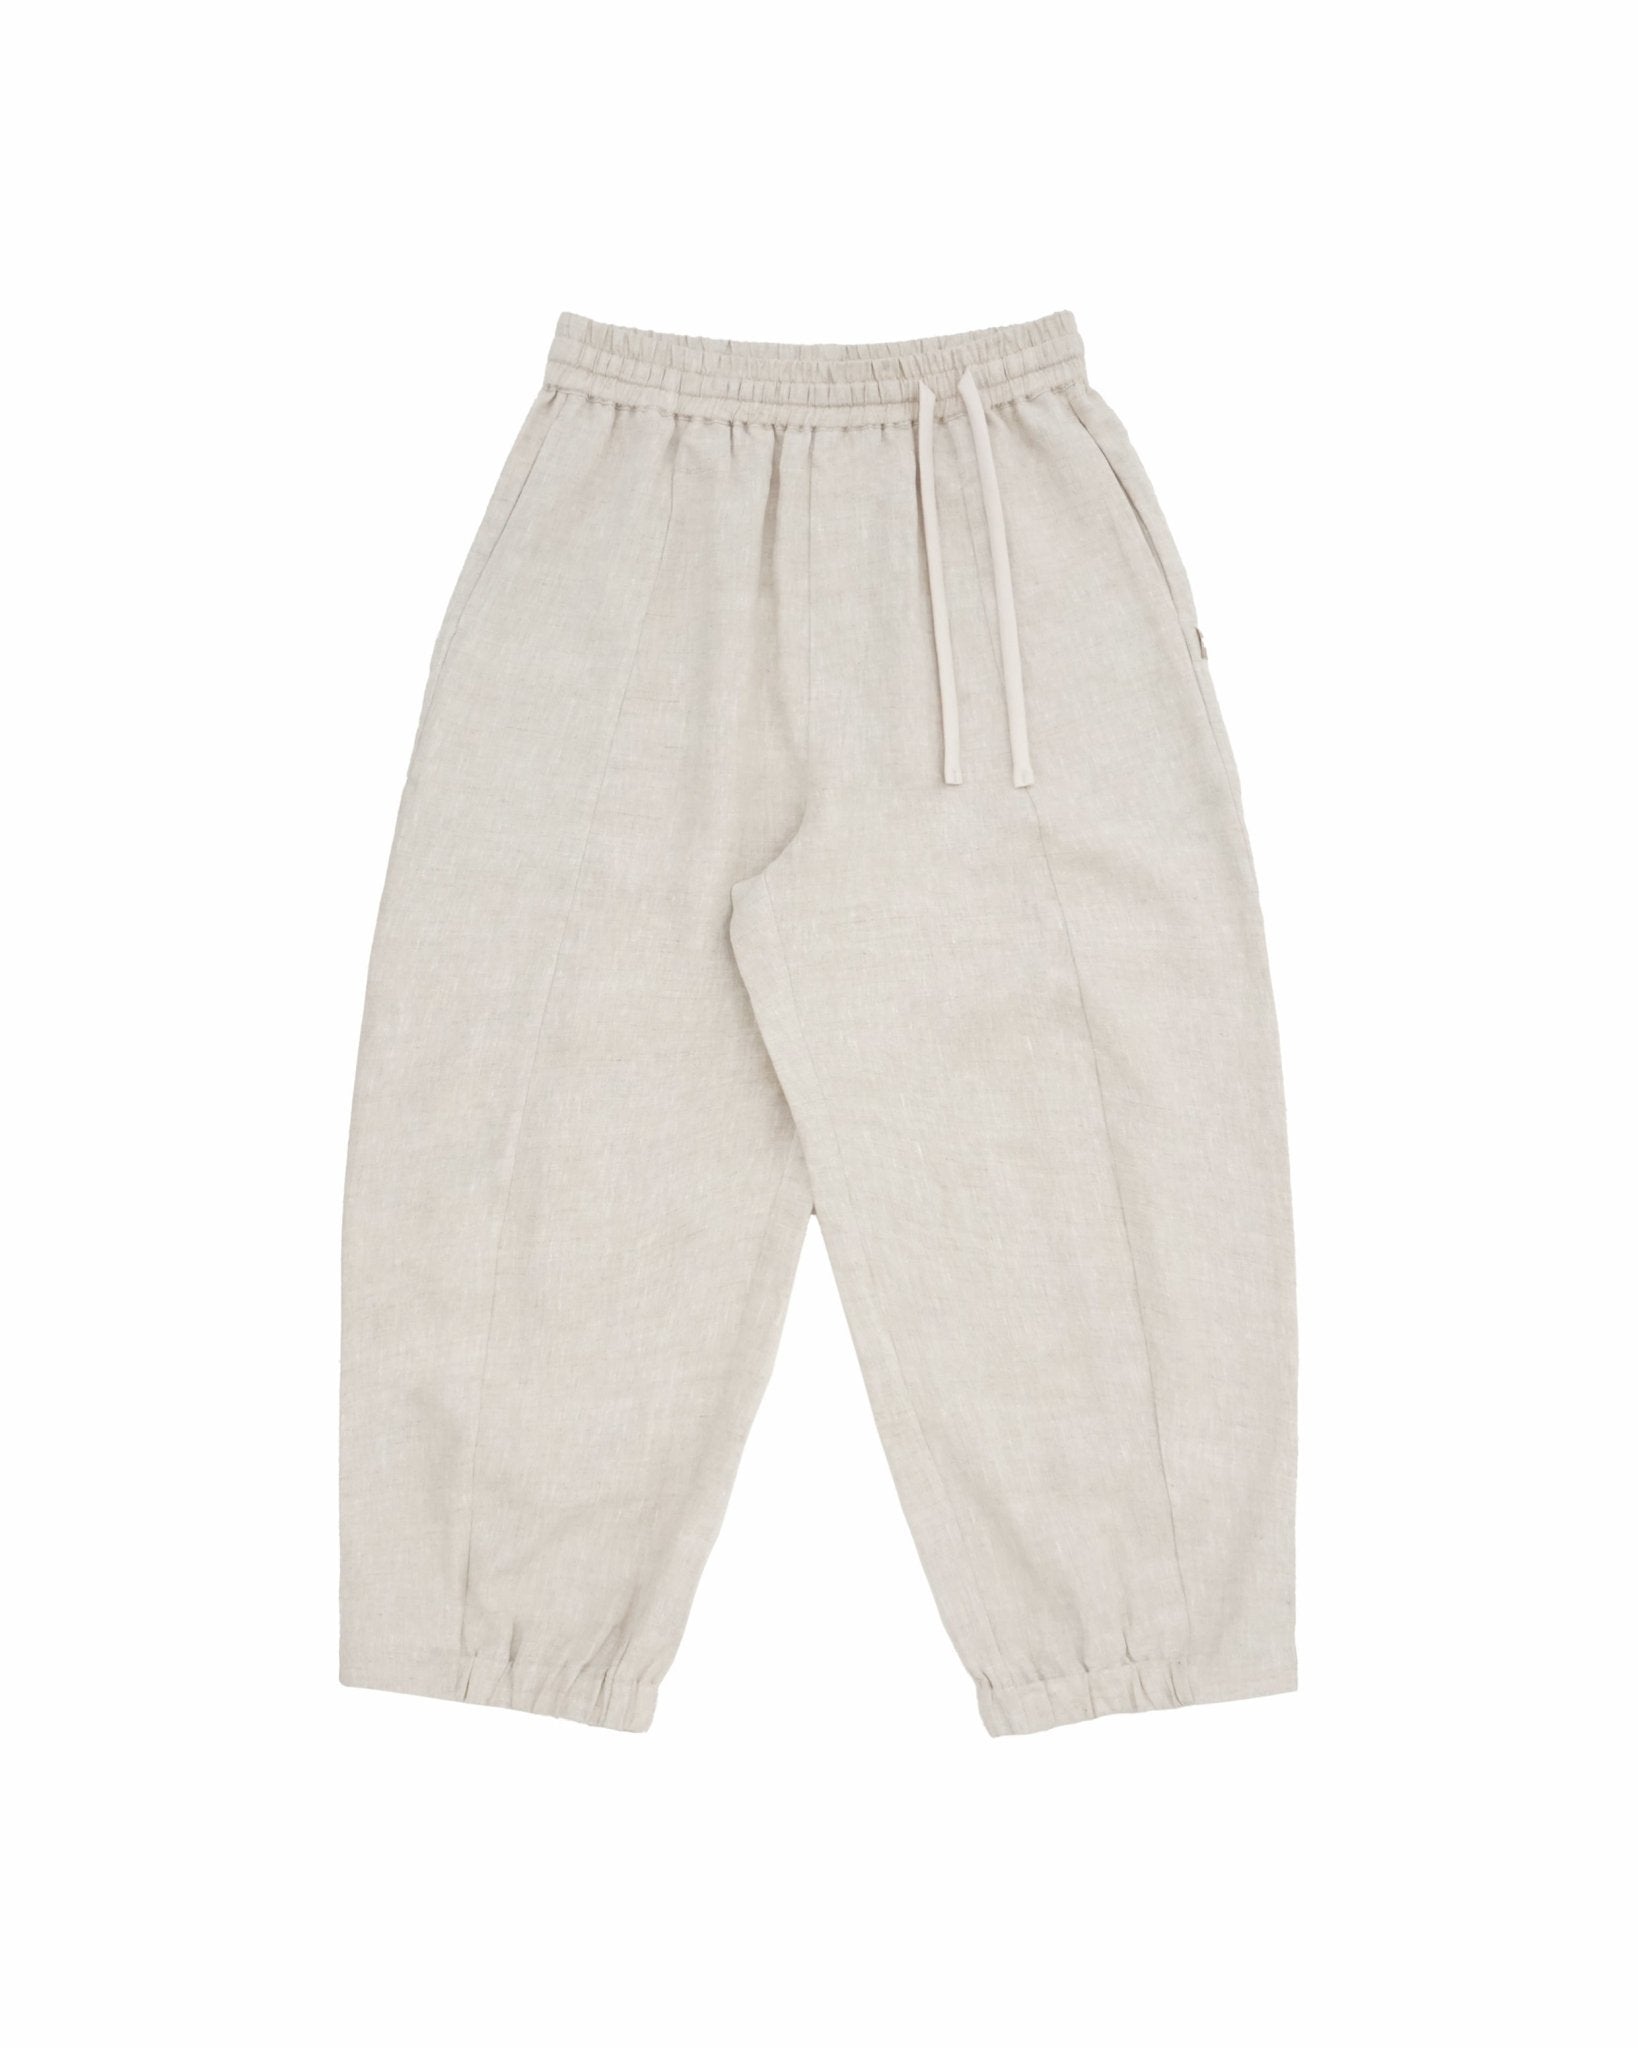 Journeyman Linen Pants - Natural - G R A Y E